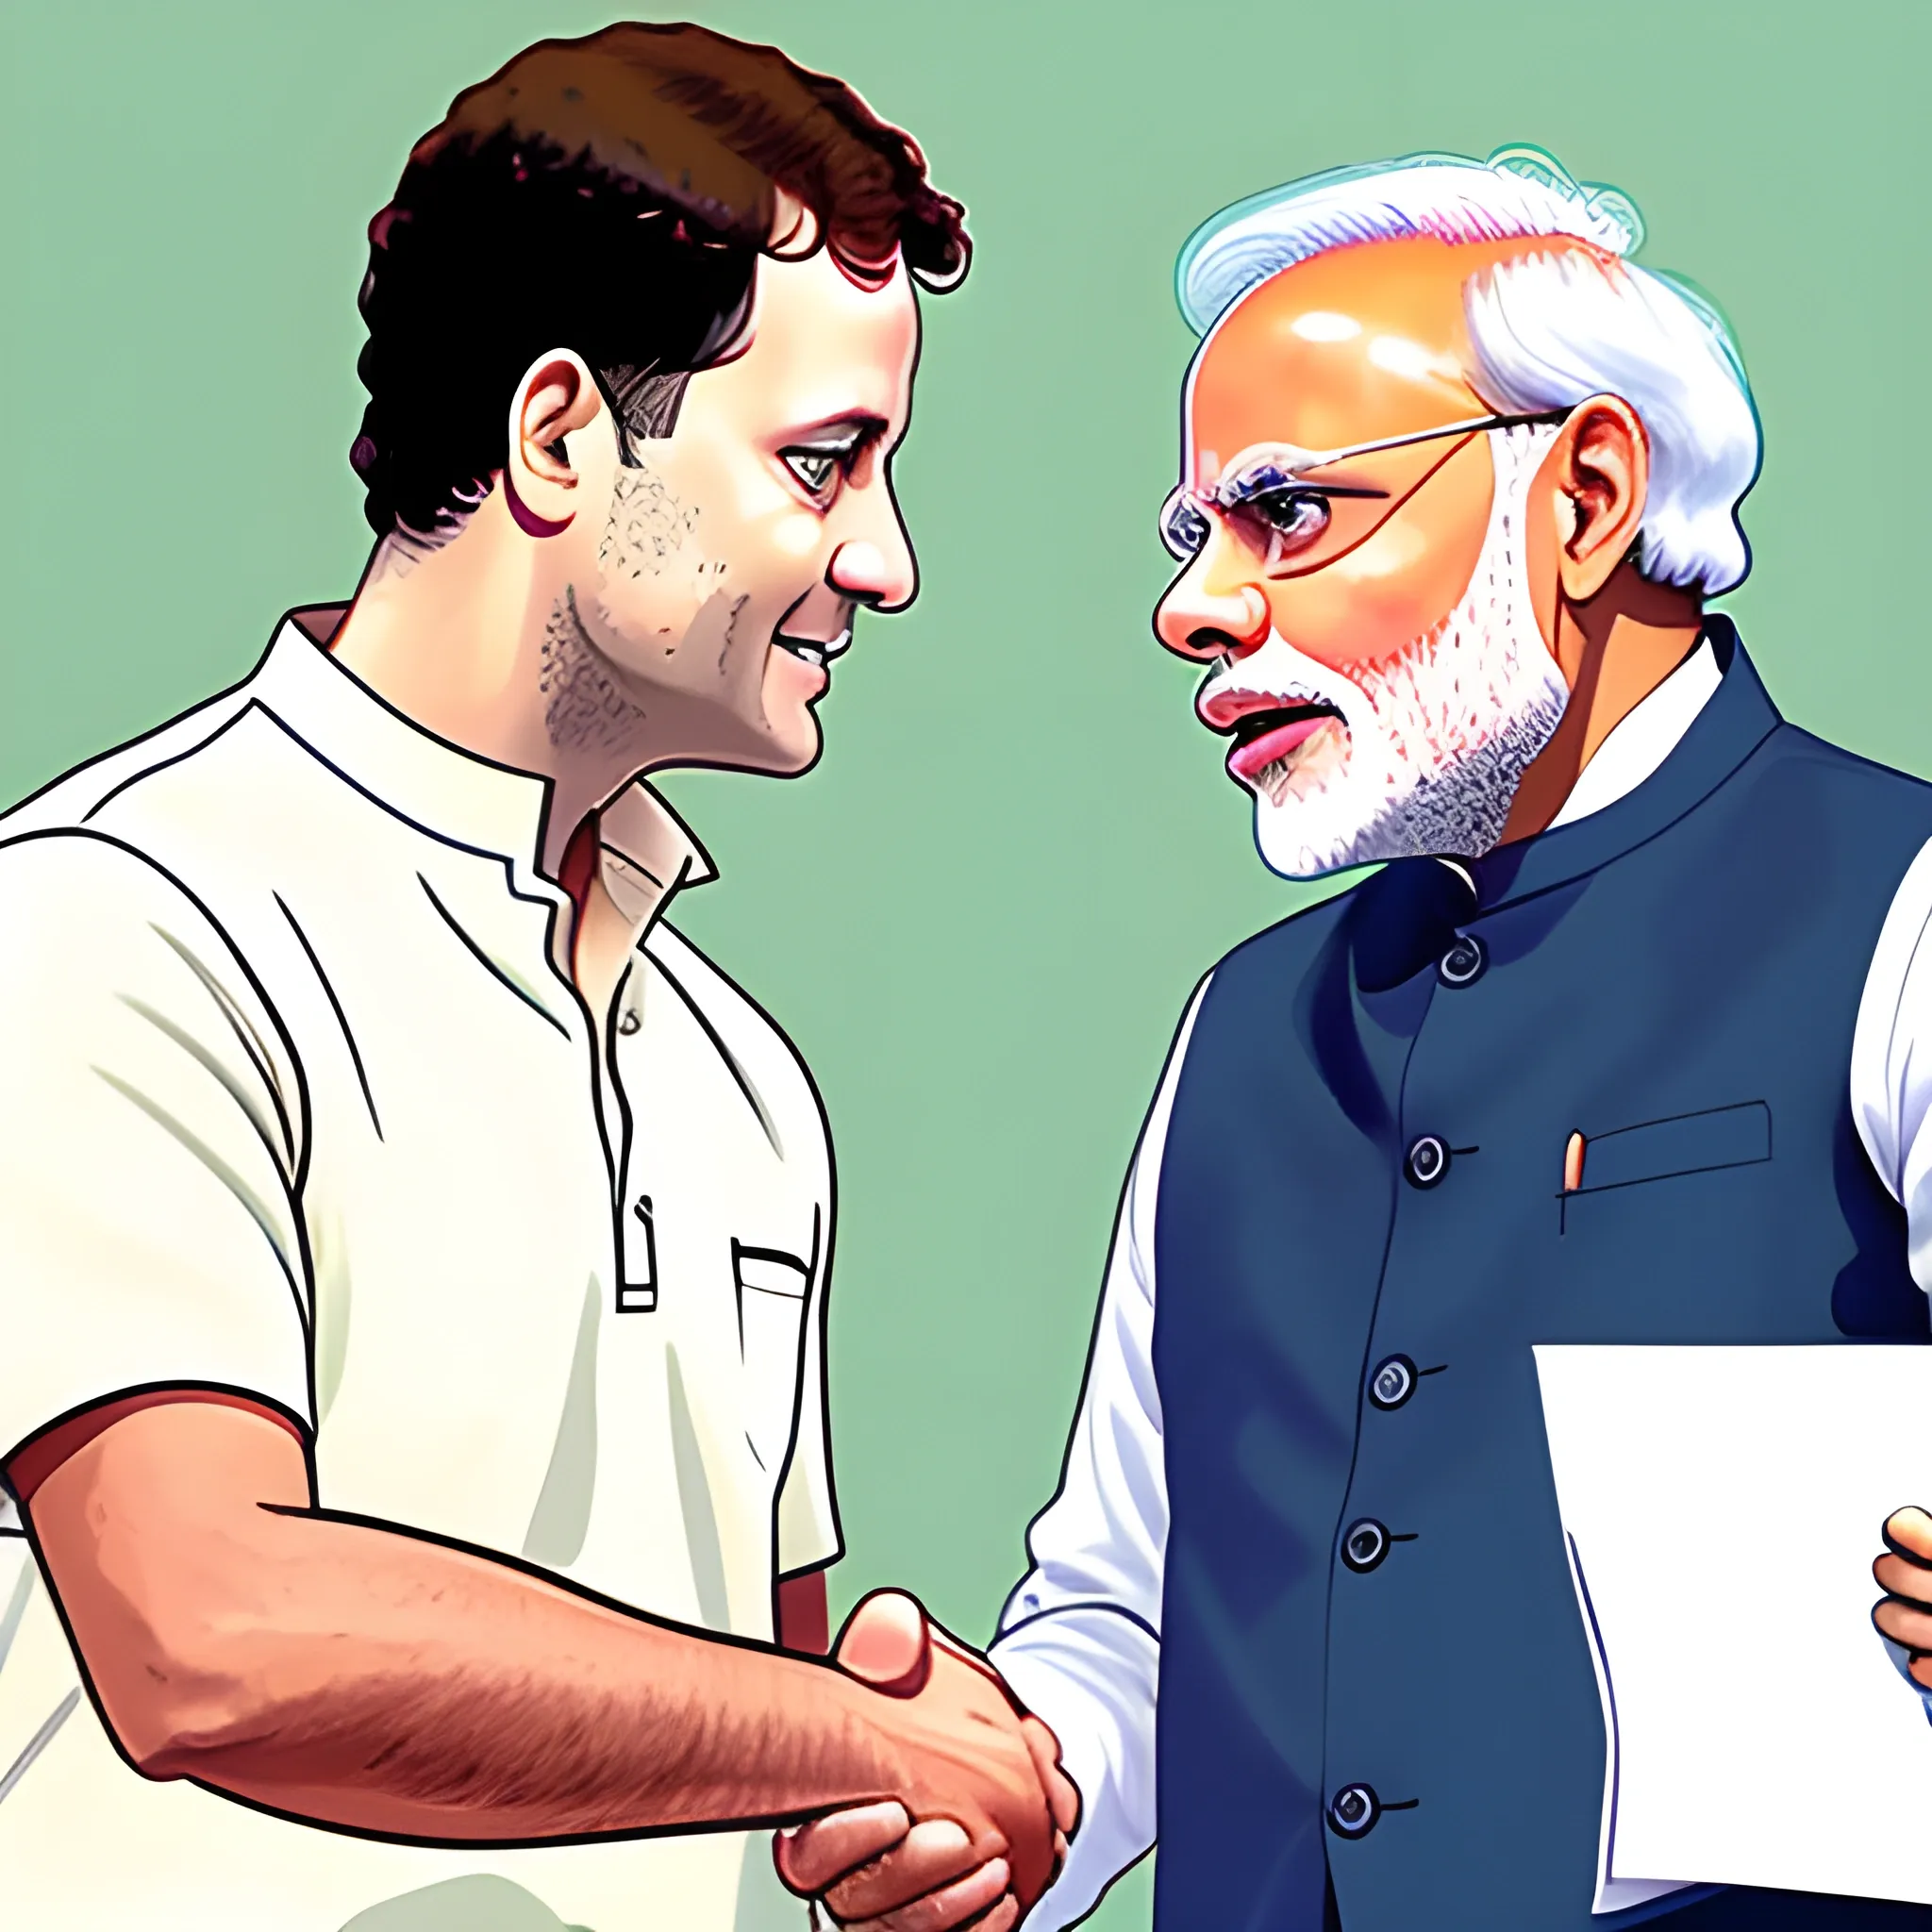 Photo of (Rahul Gandhi) shaking hand with Narendra Modi, Cartoon